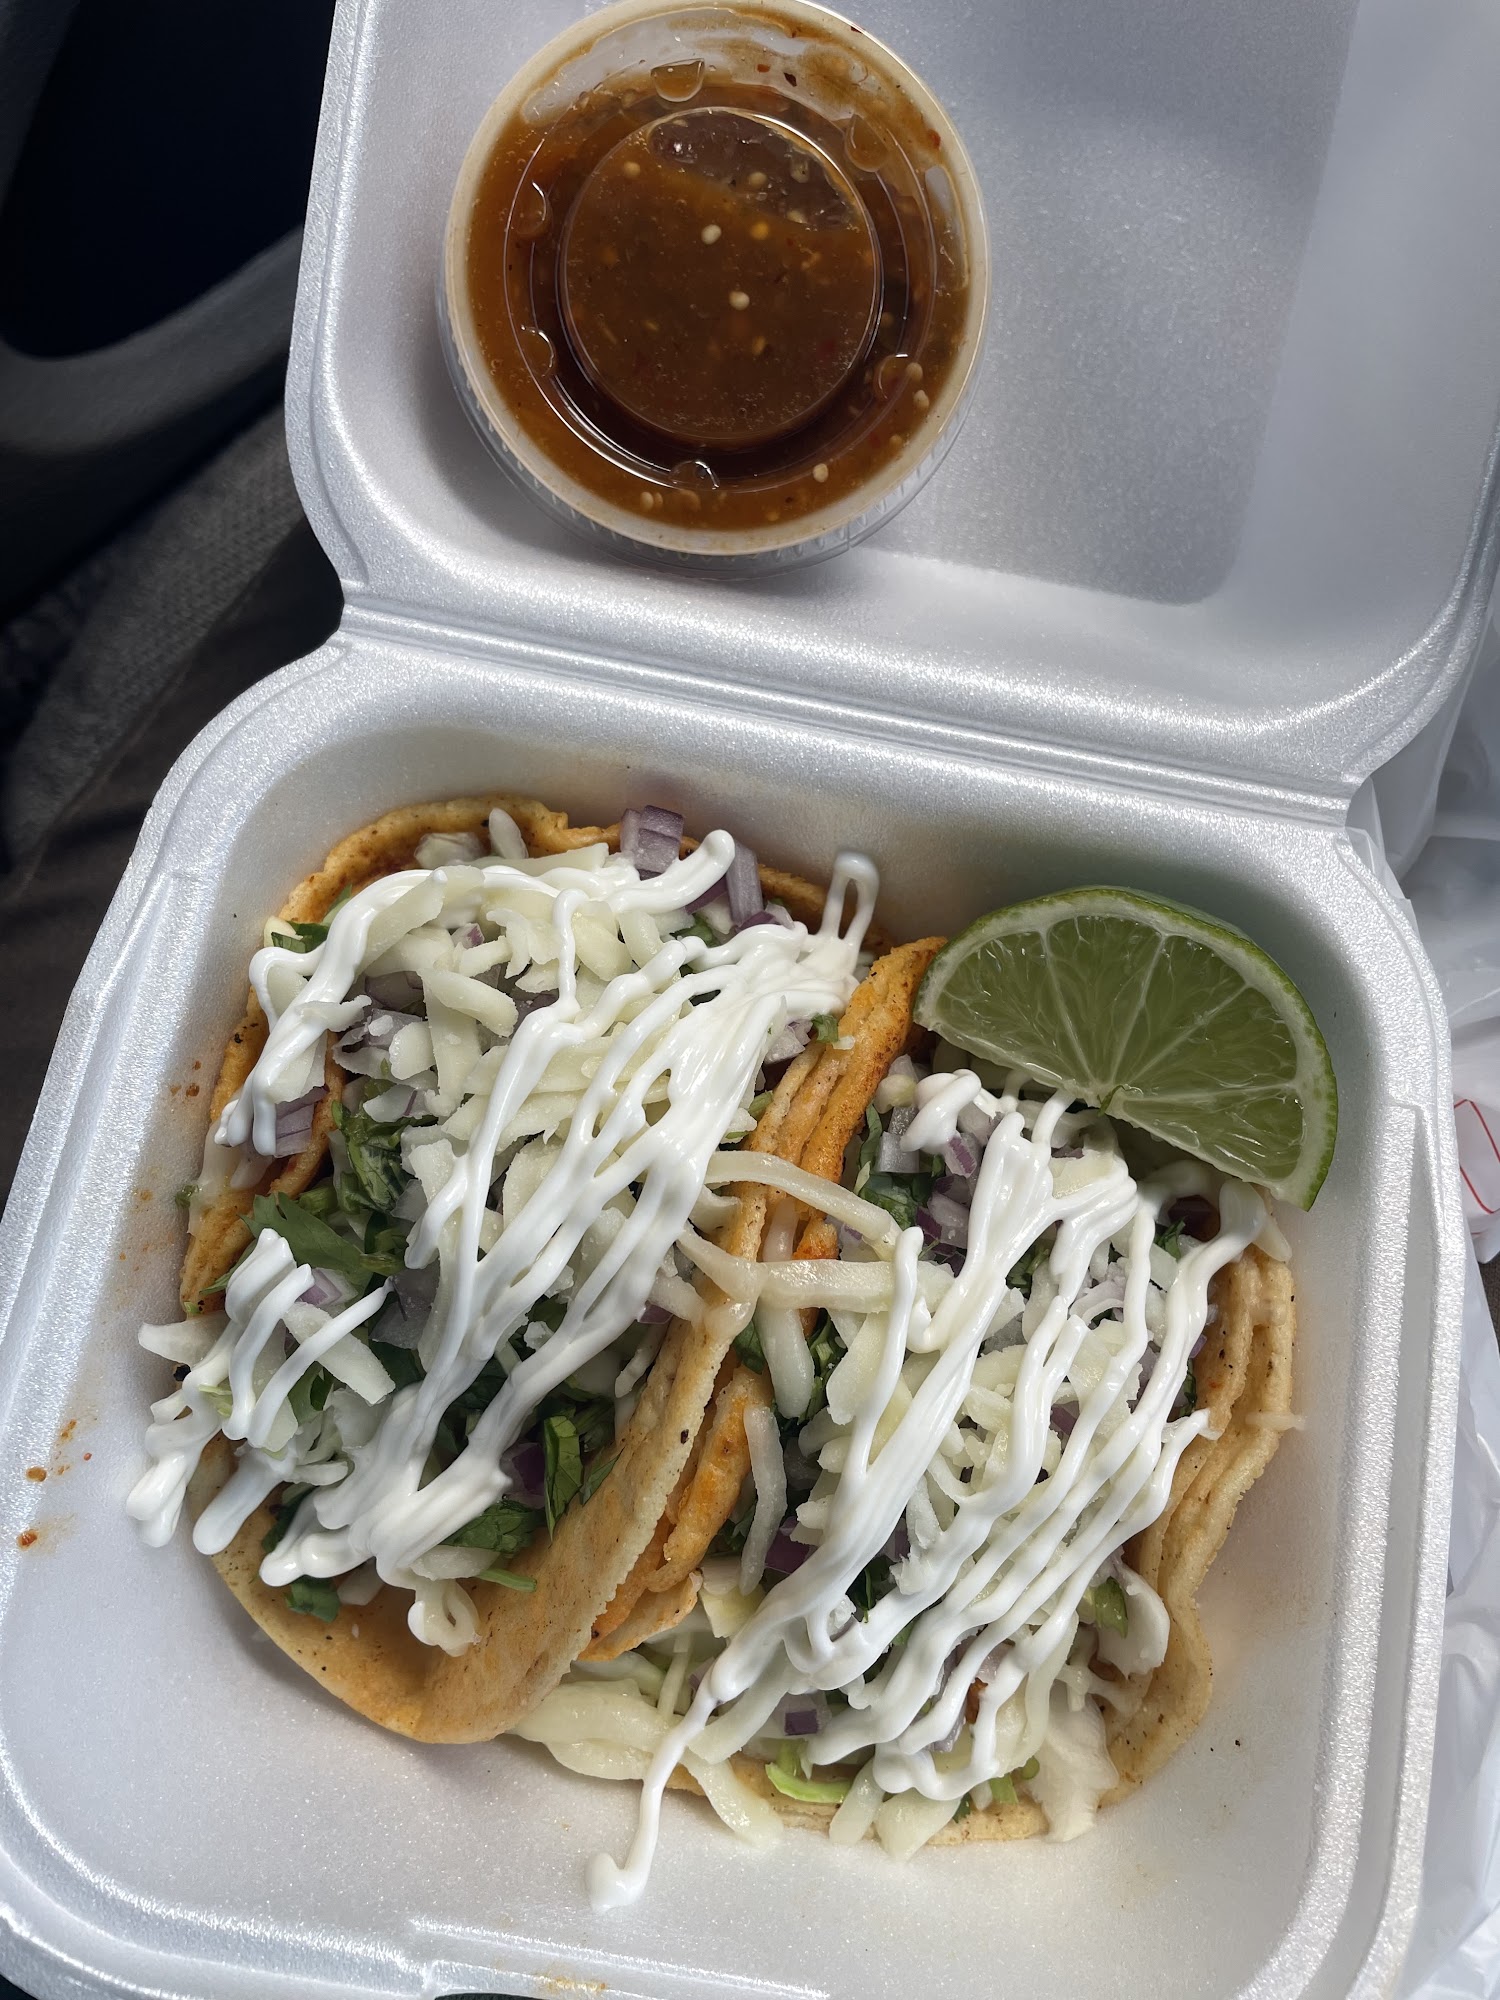 Tacos El Rey